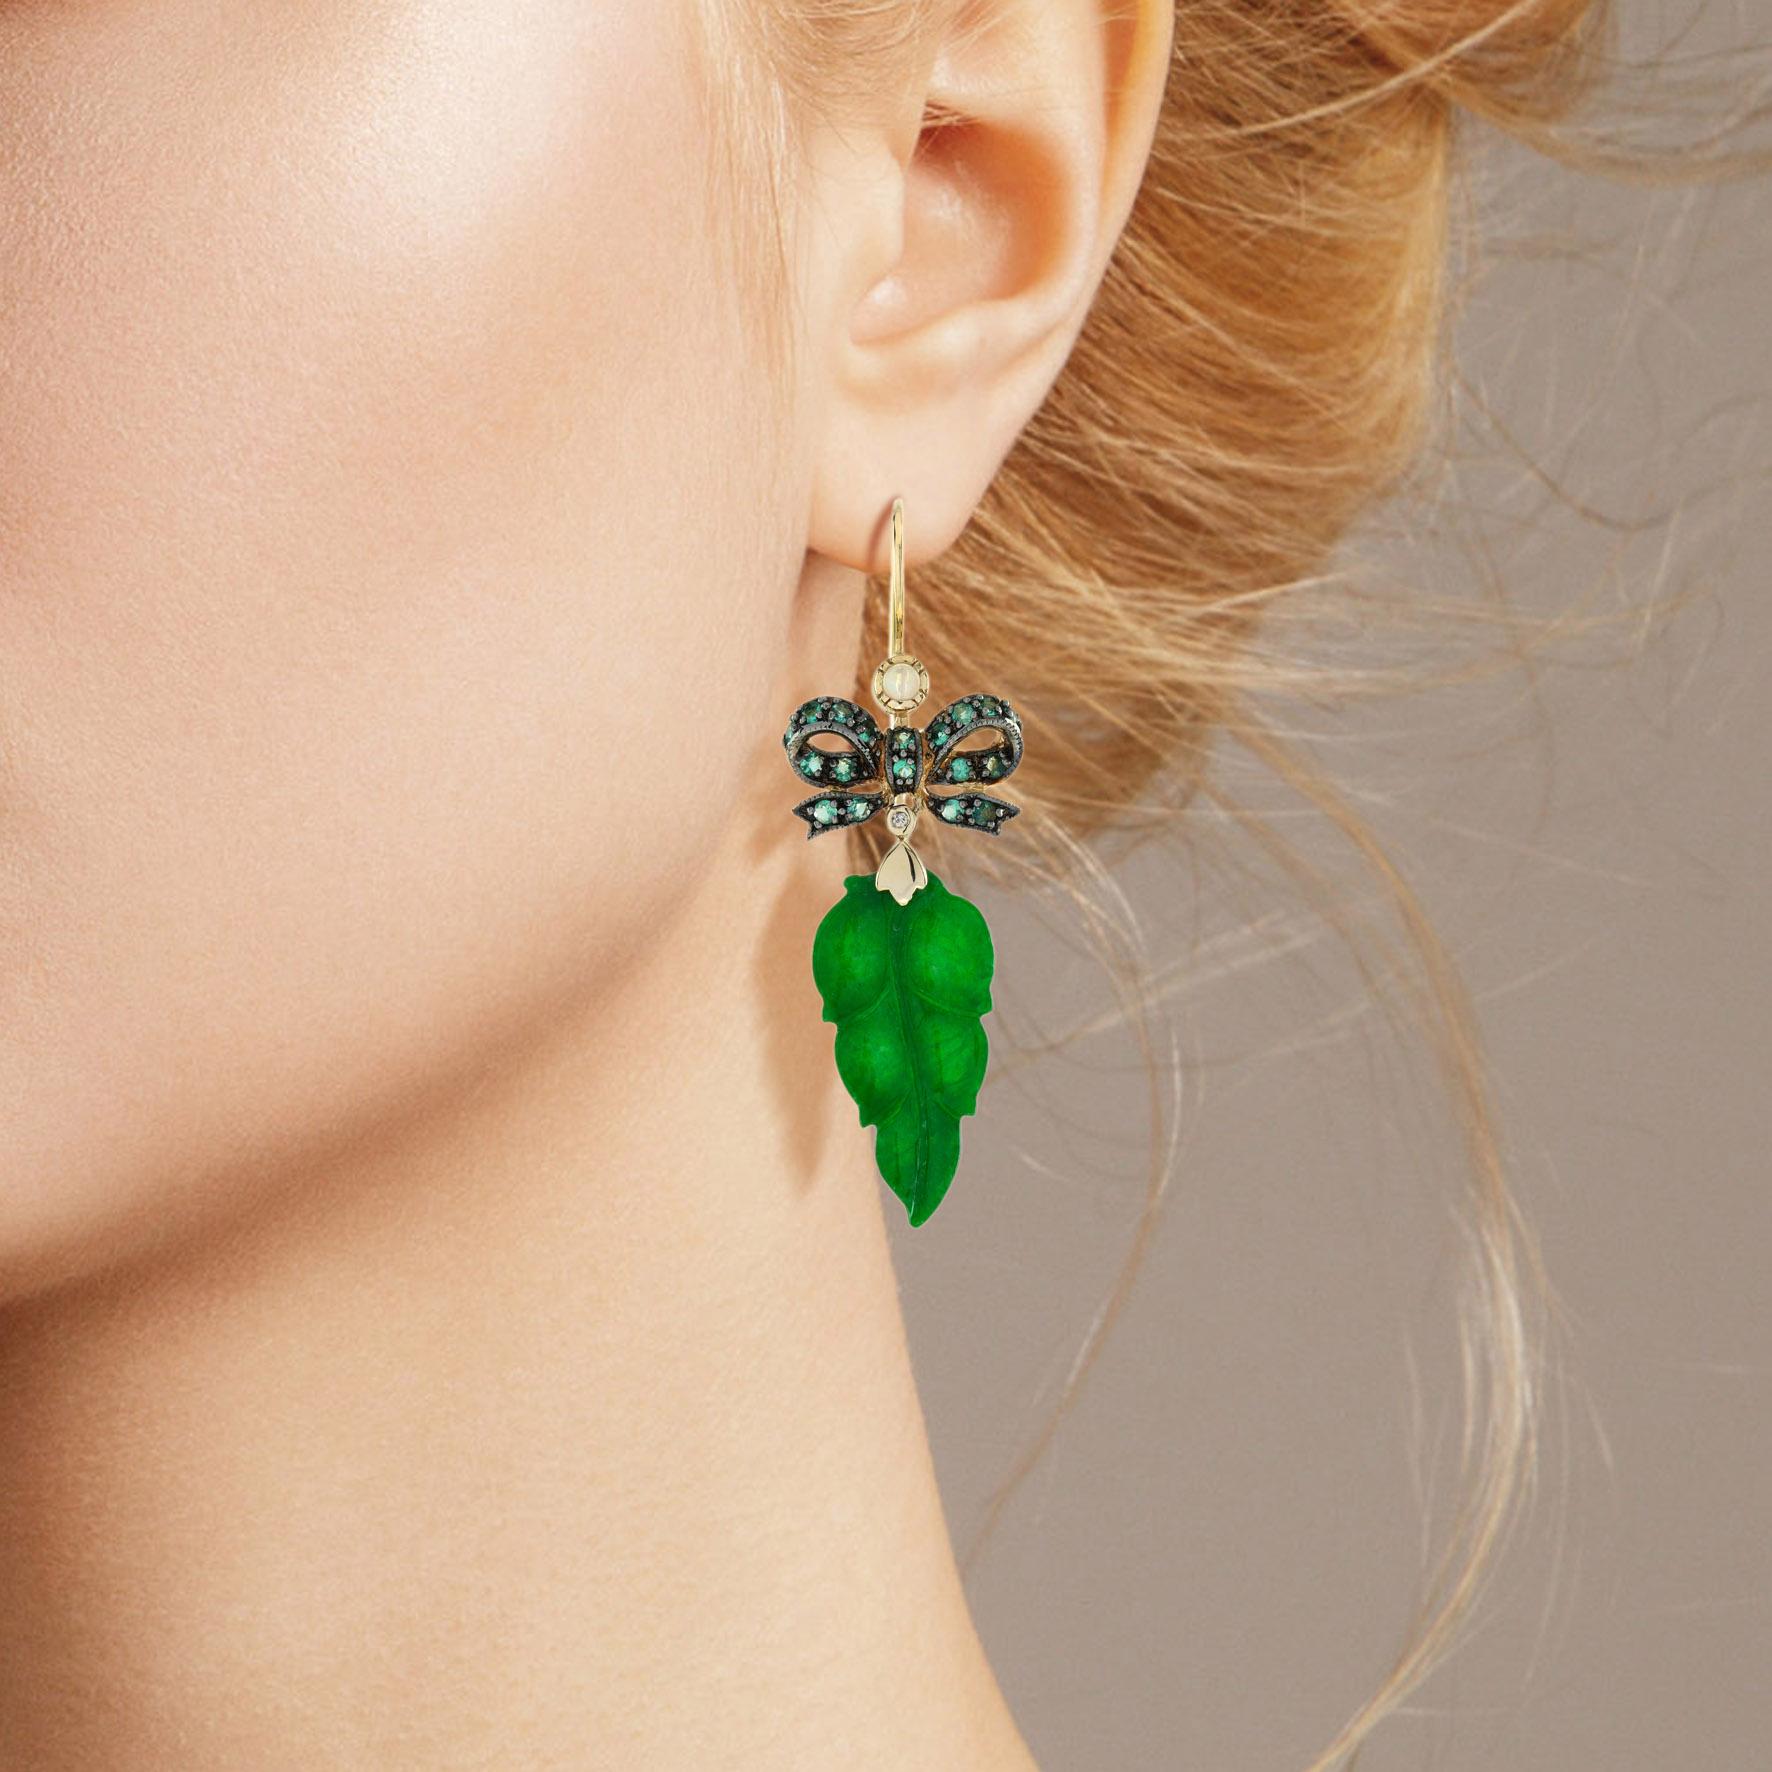 Le jade naturel de ces jolies boucles d'oreilles a une forme très particulière. Les deux pièces ont une couleur verte intense et des feuilles bien sculptées. Le jade est suspendu dans une monture en or jaune 9k avec un ruban d'émeraude sur le